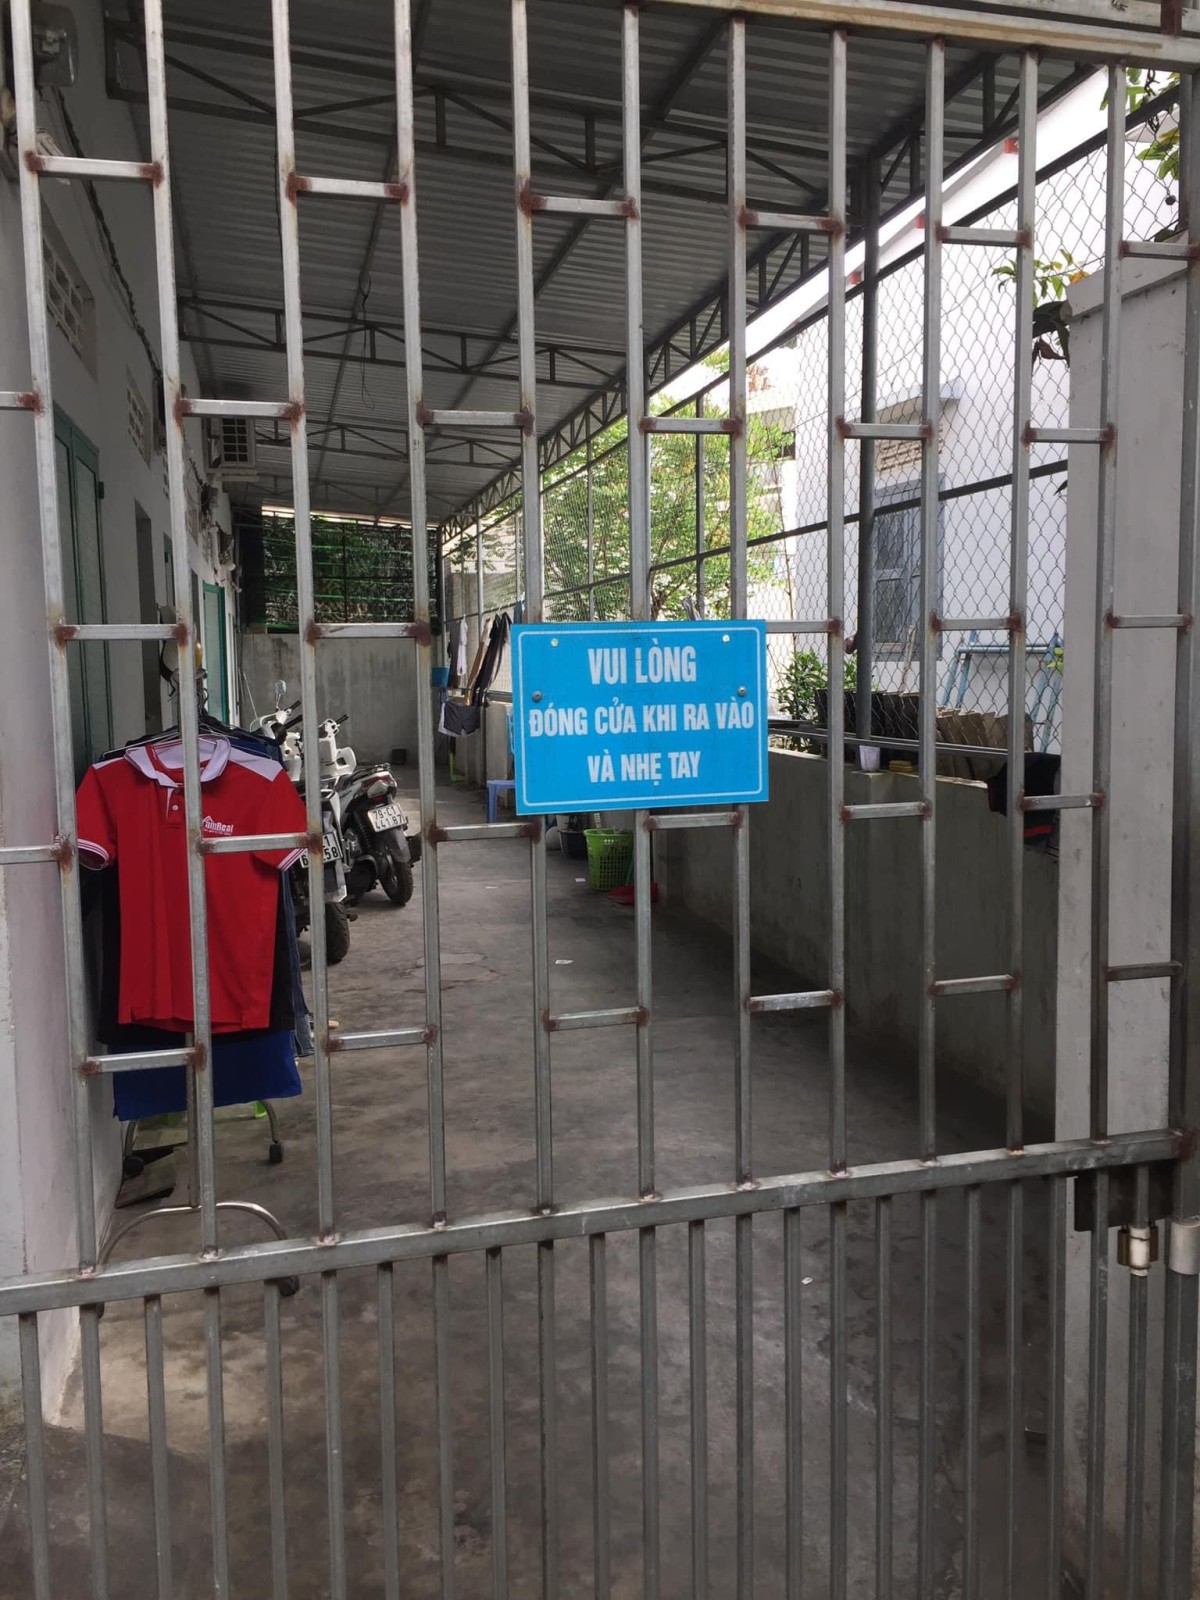 Cho thuê nhà trọ an ninh, sạch sẽ. Vị trí gần trung tâm ( Ga Nha Trang, Chợ Phương Sài,...)